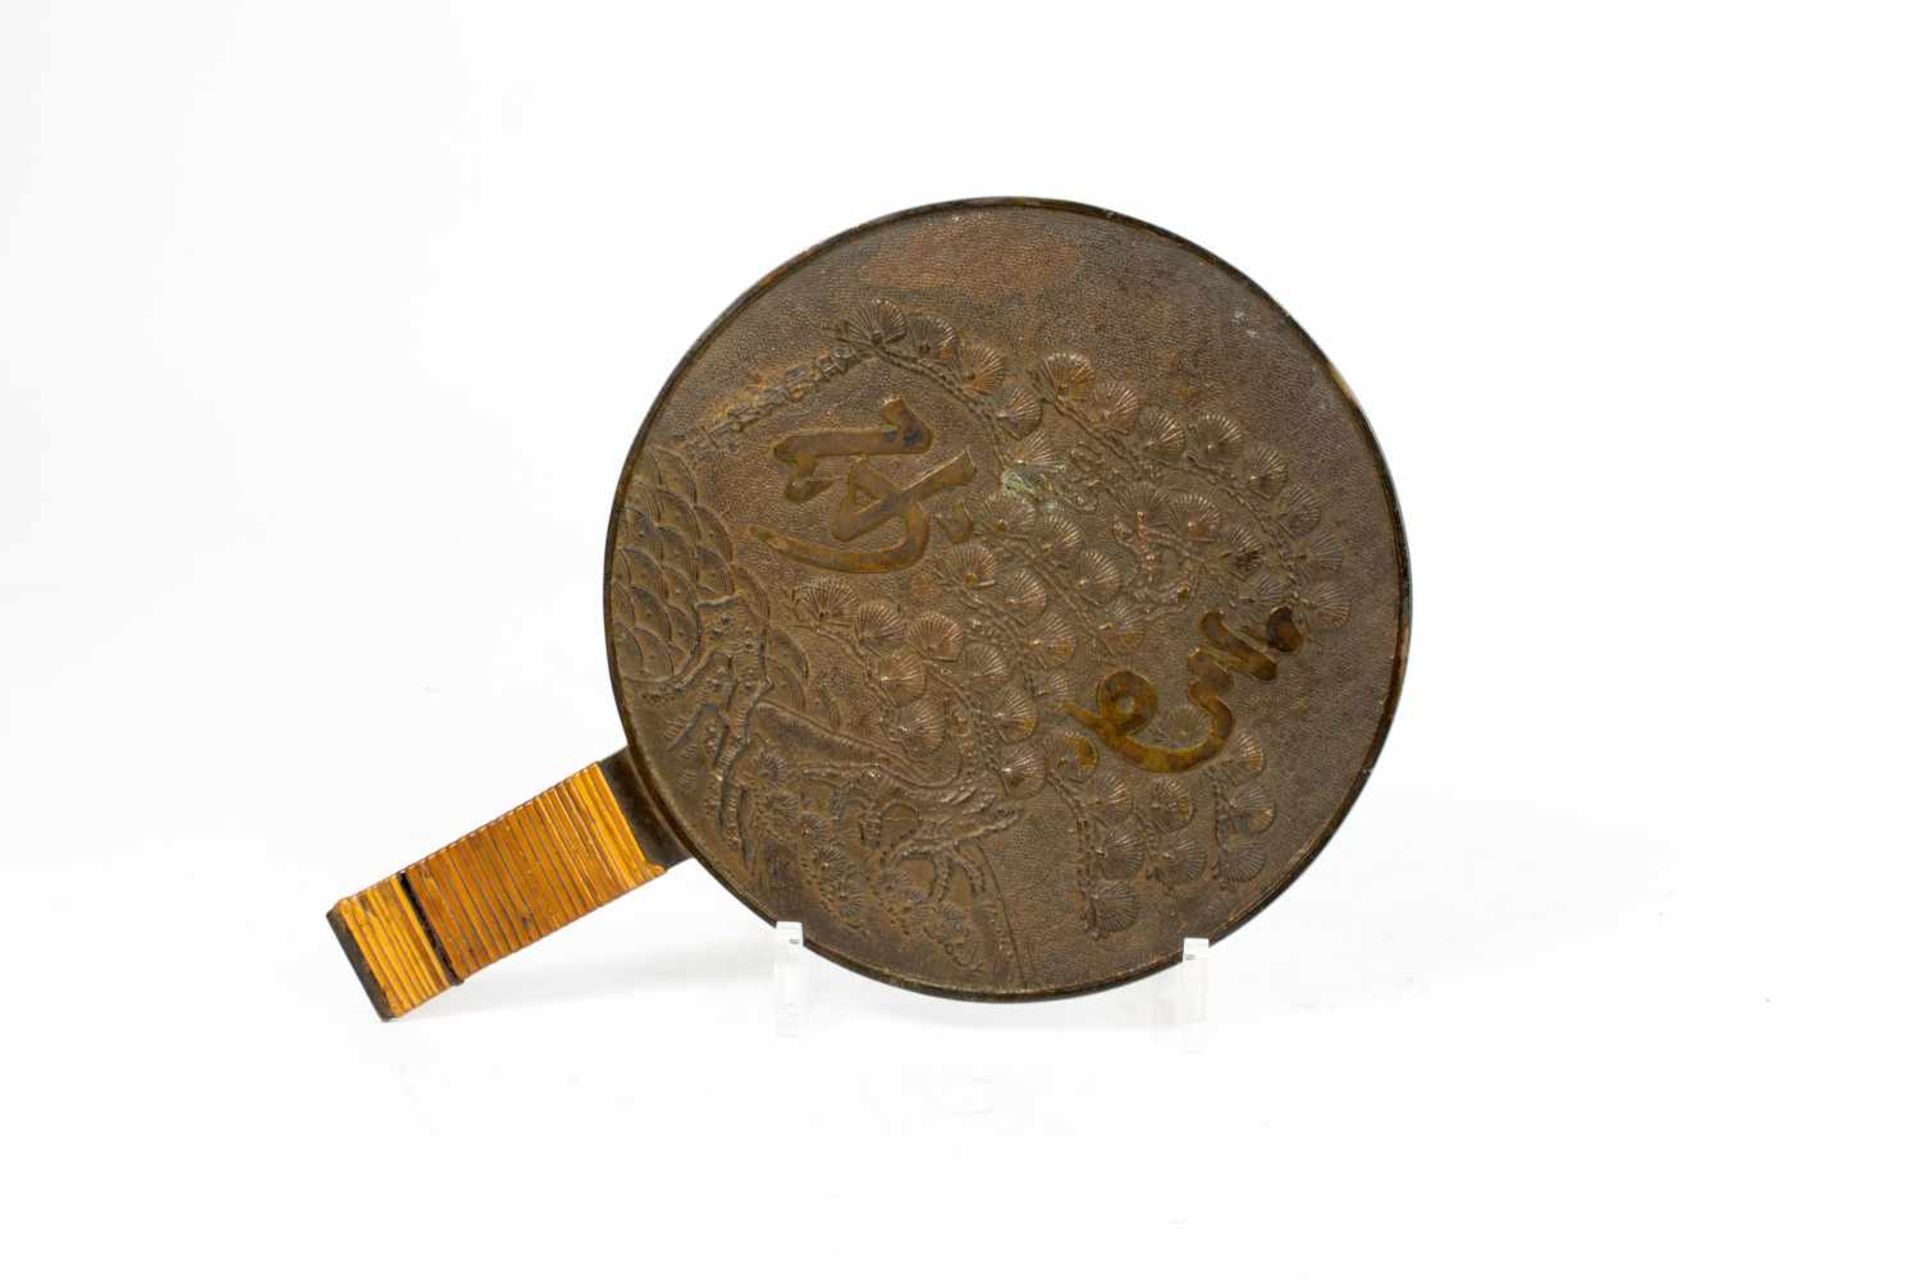 Handspiegel China, 19. Jh., Bronze, Griff mit Weide umsäumt, Länge 29 cm, Ø 20 cm, altersbedingte